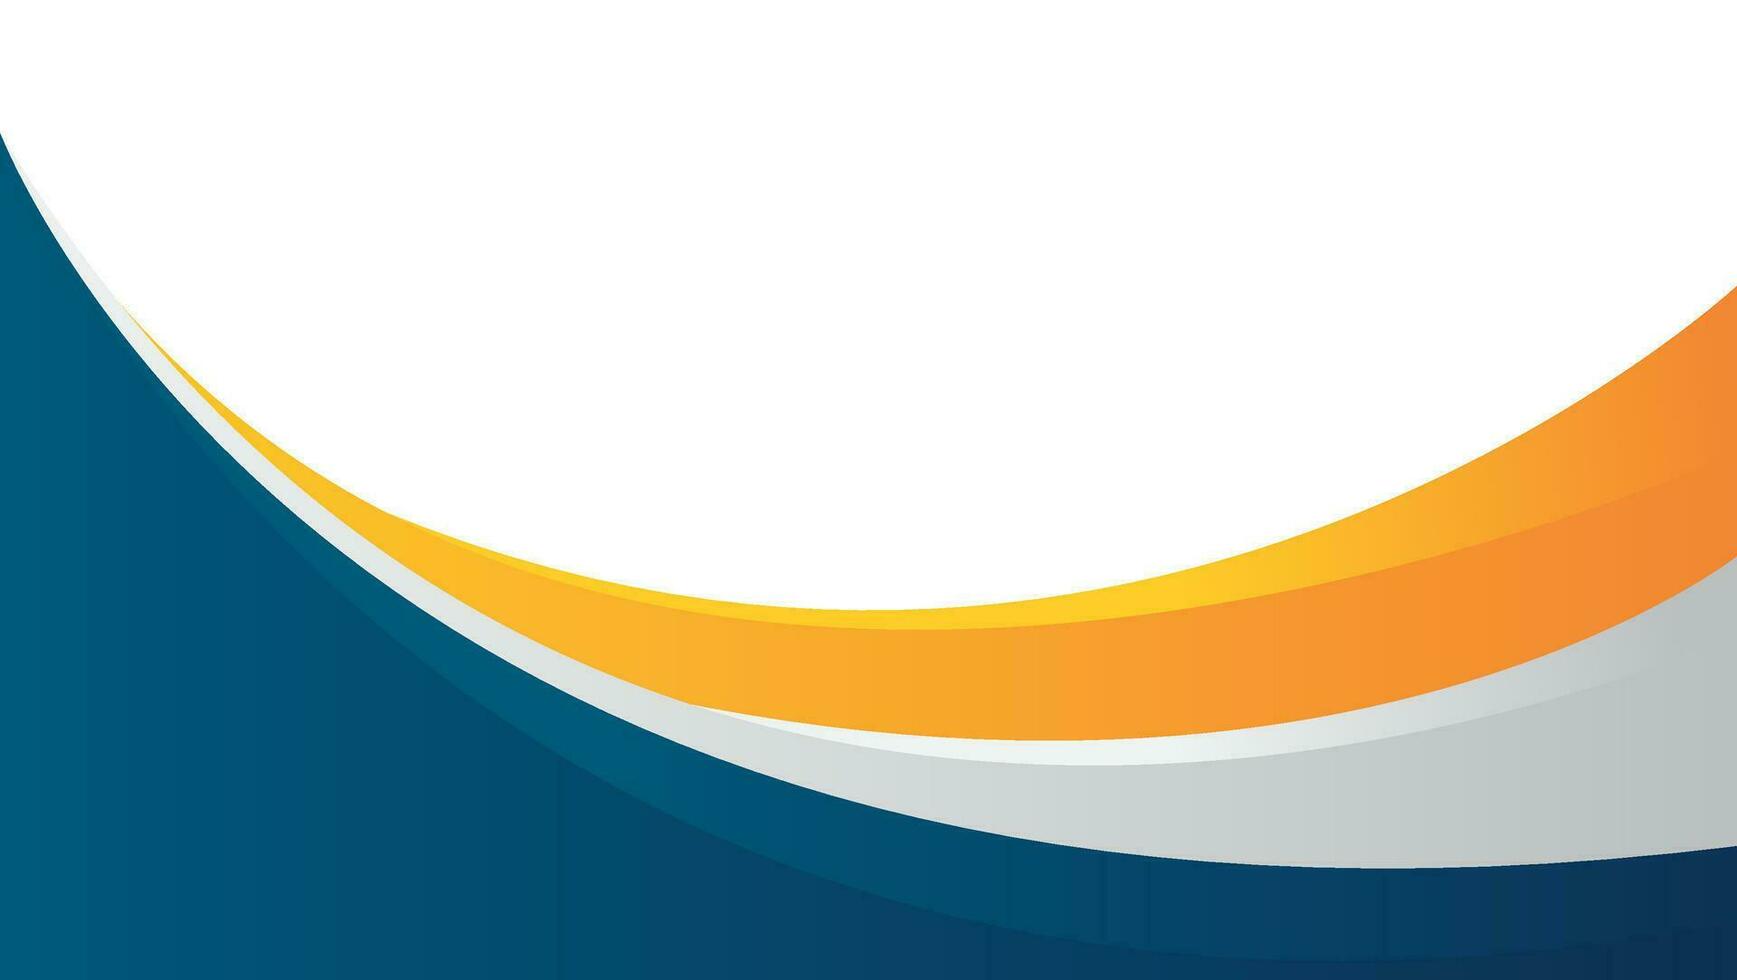 abstract bedrijf achtergrond met gebogen vormen in blauw en oranje. vector illustratie